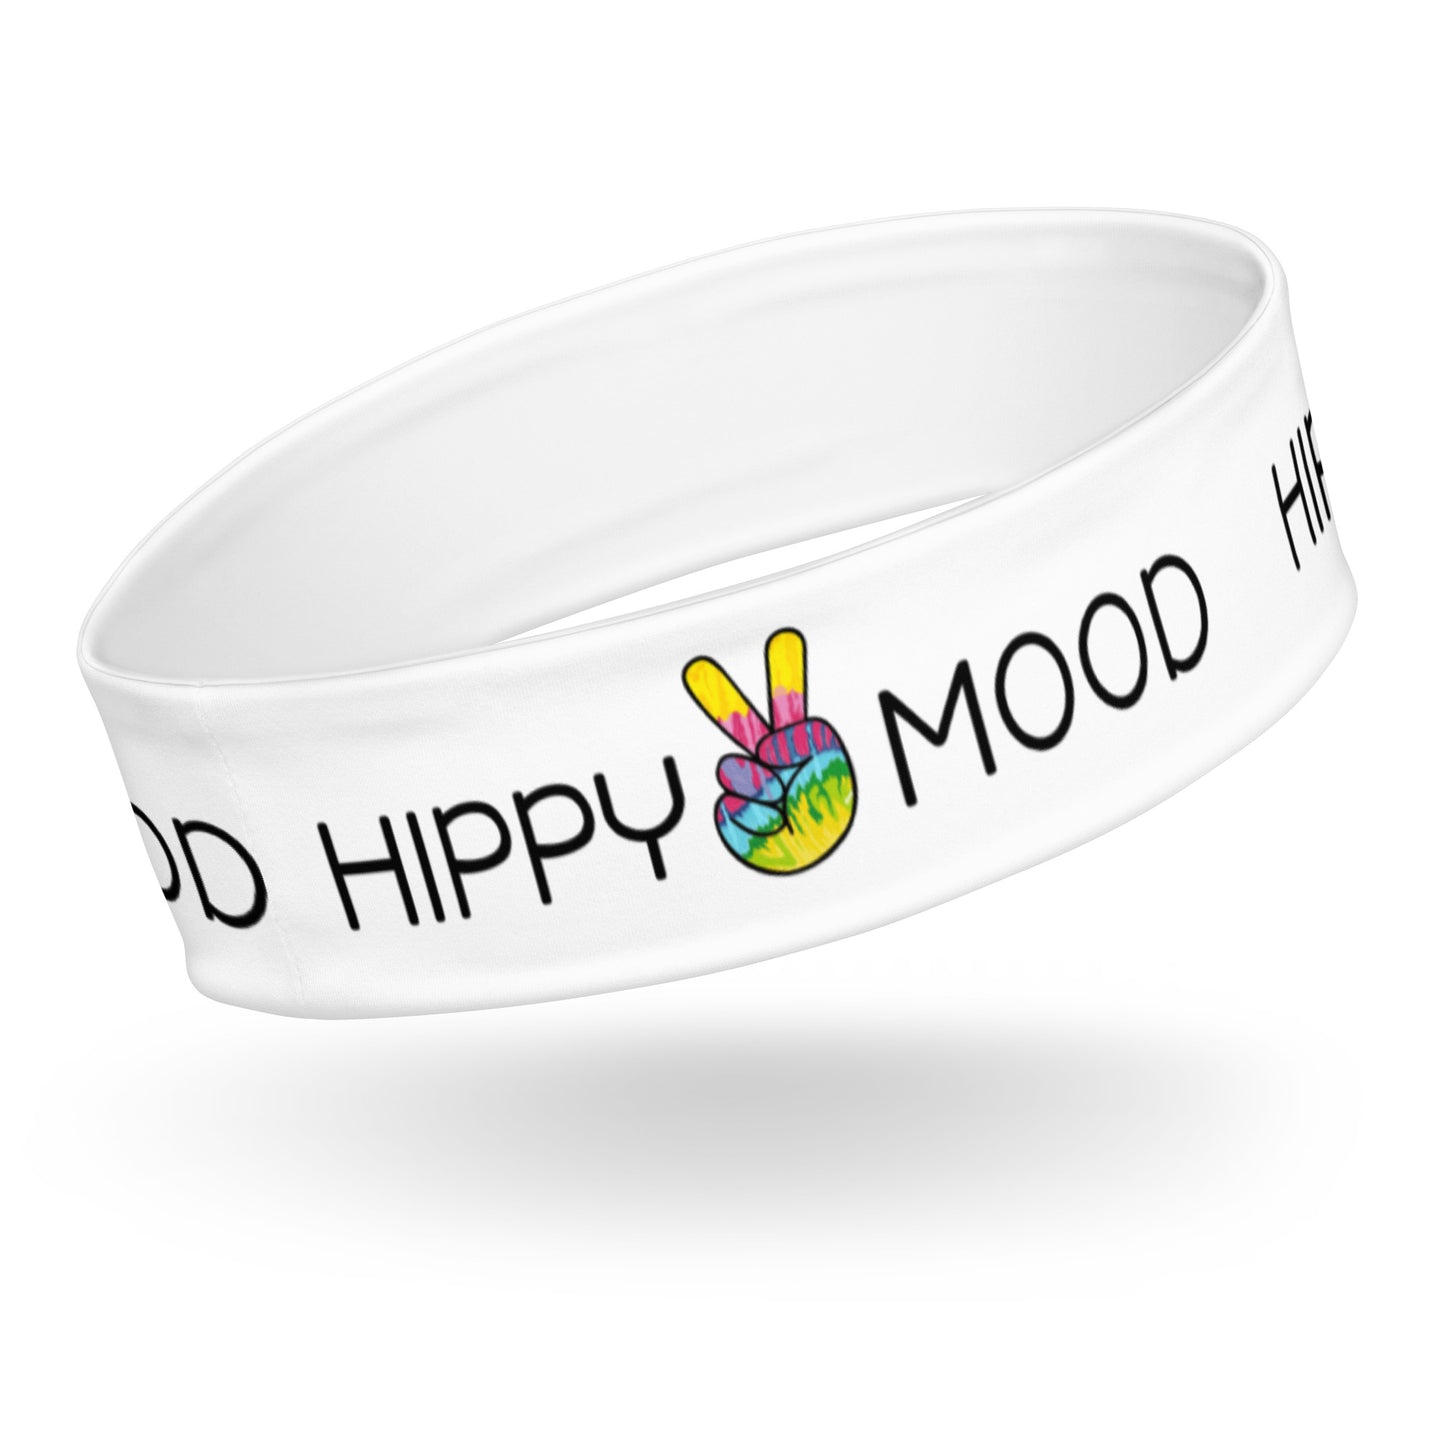 Hippy Mood Headband